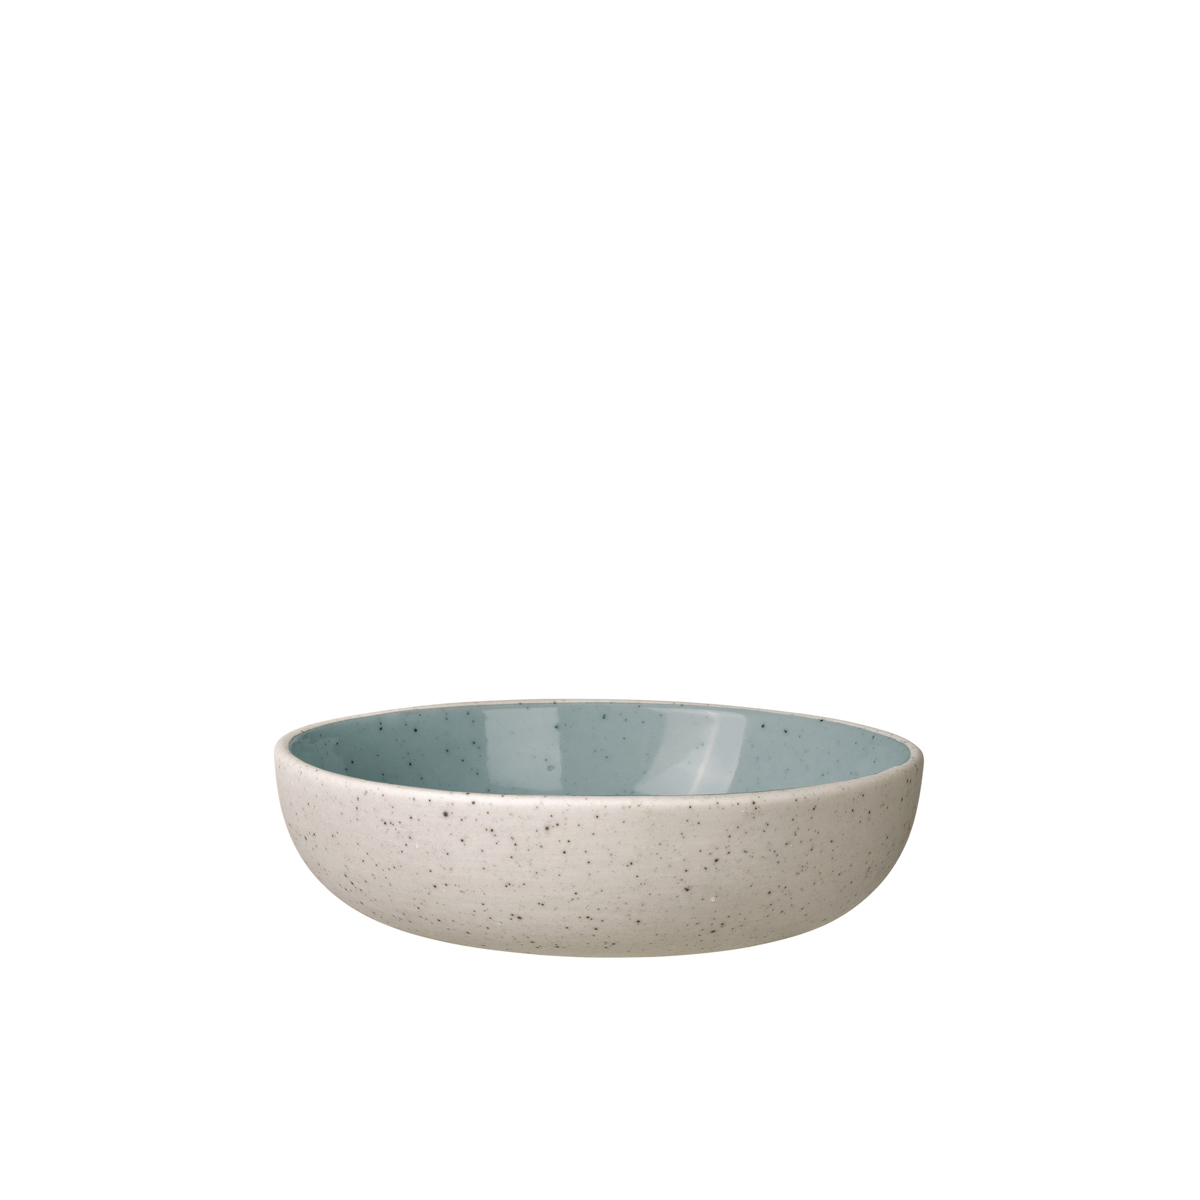 Snackschale -SABLO- 80 ml Stone, Ø 10 cm. Material: Keramik. Von Blomus.